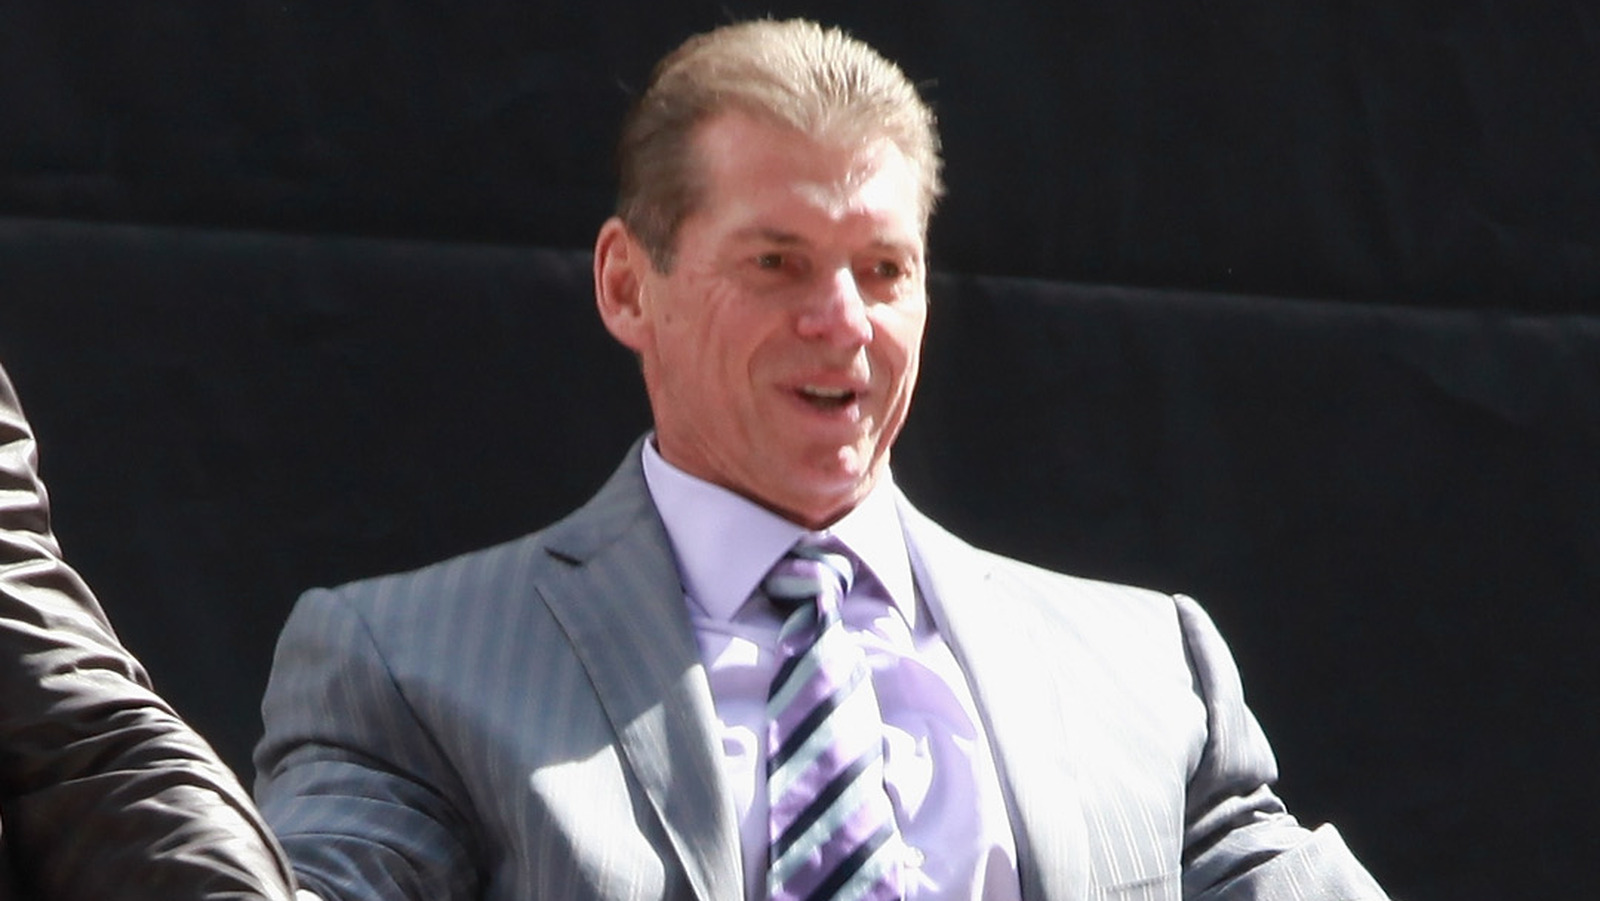 Según los informes, Vince McMahon y WWE enfrentan una demanda extraña de un enemigo familiar